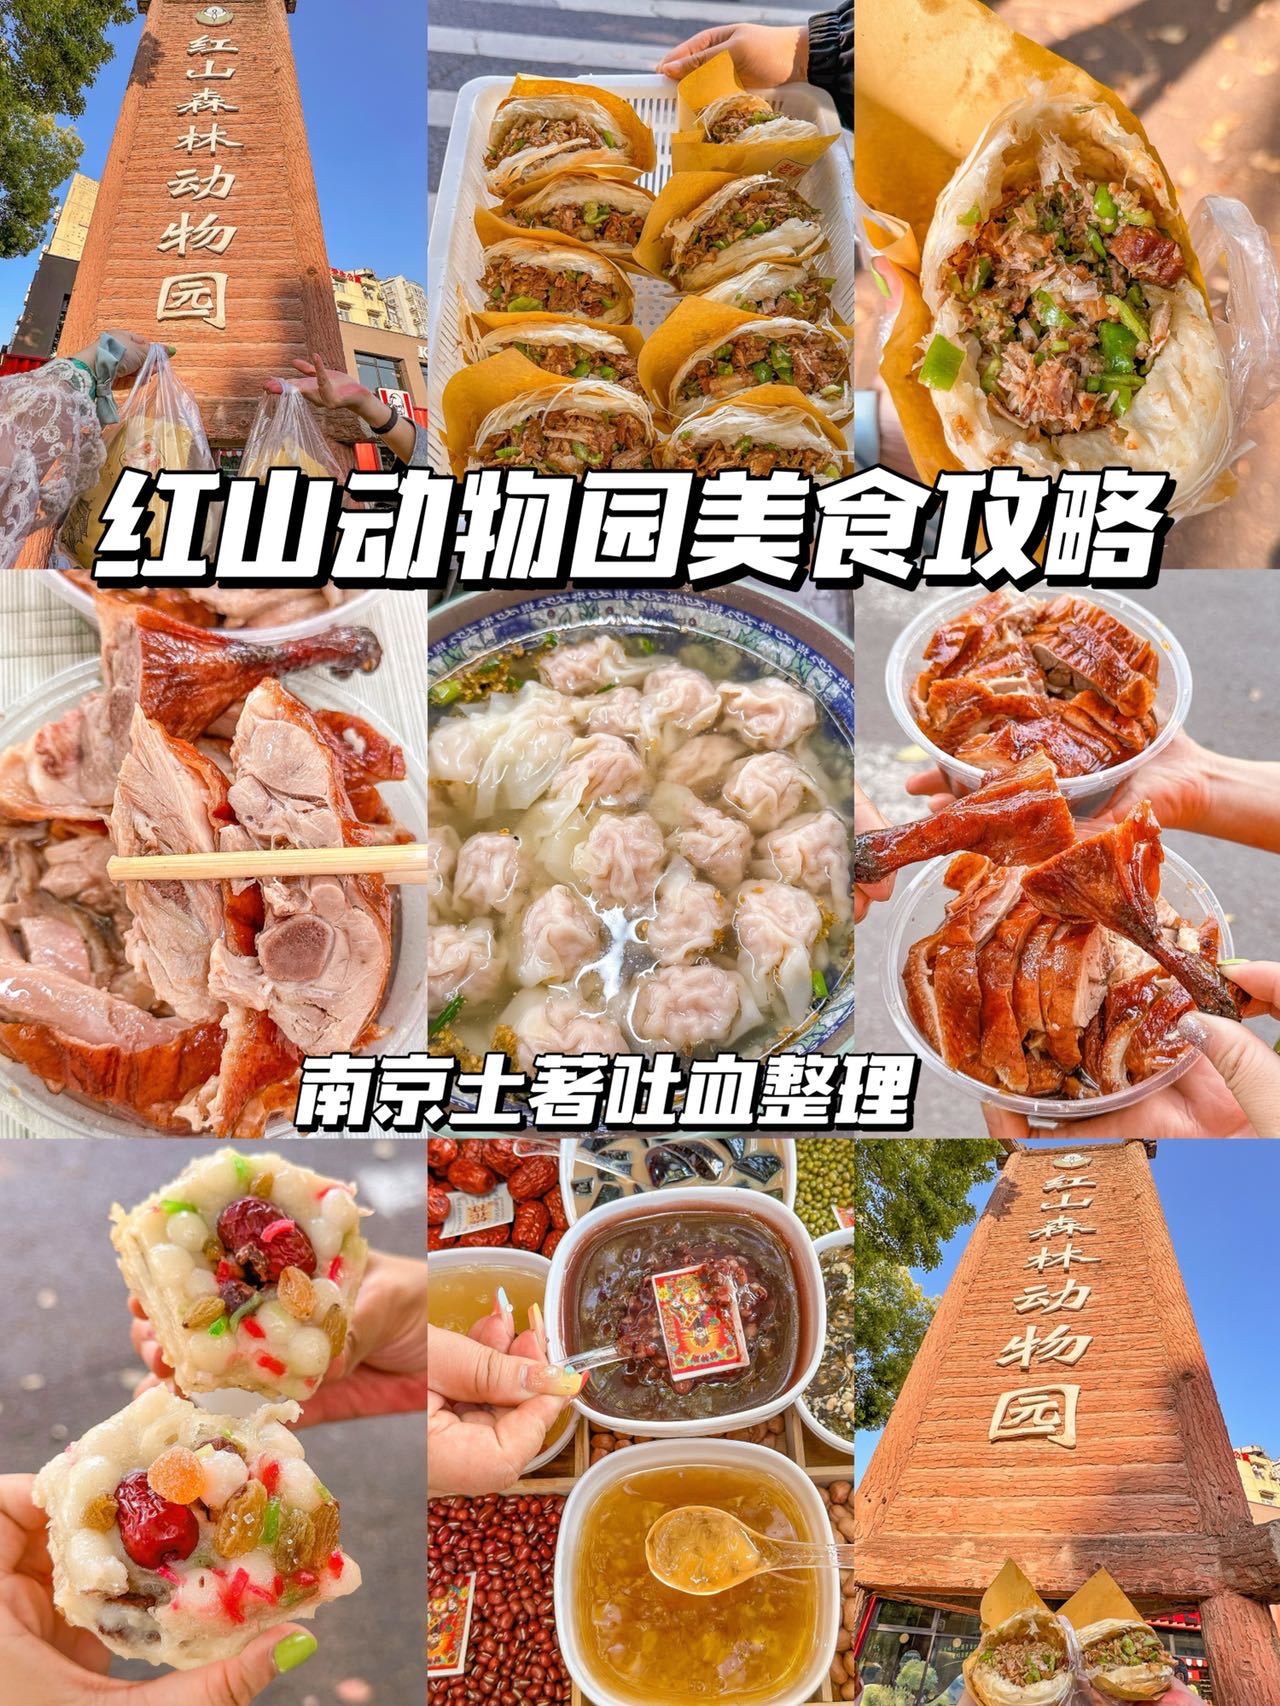 红山动物园美食攻略‼️南京土著吐血整理✌️ 最近南京红山动物园不要太🔥，绝对是来南京必打卡景点✌️其